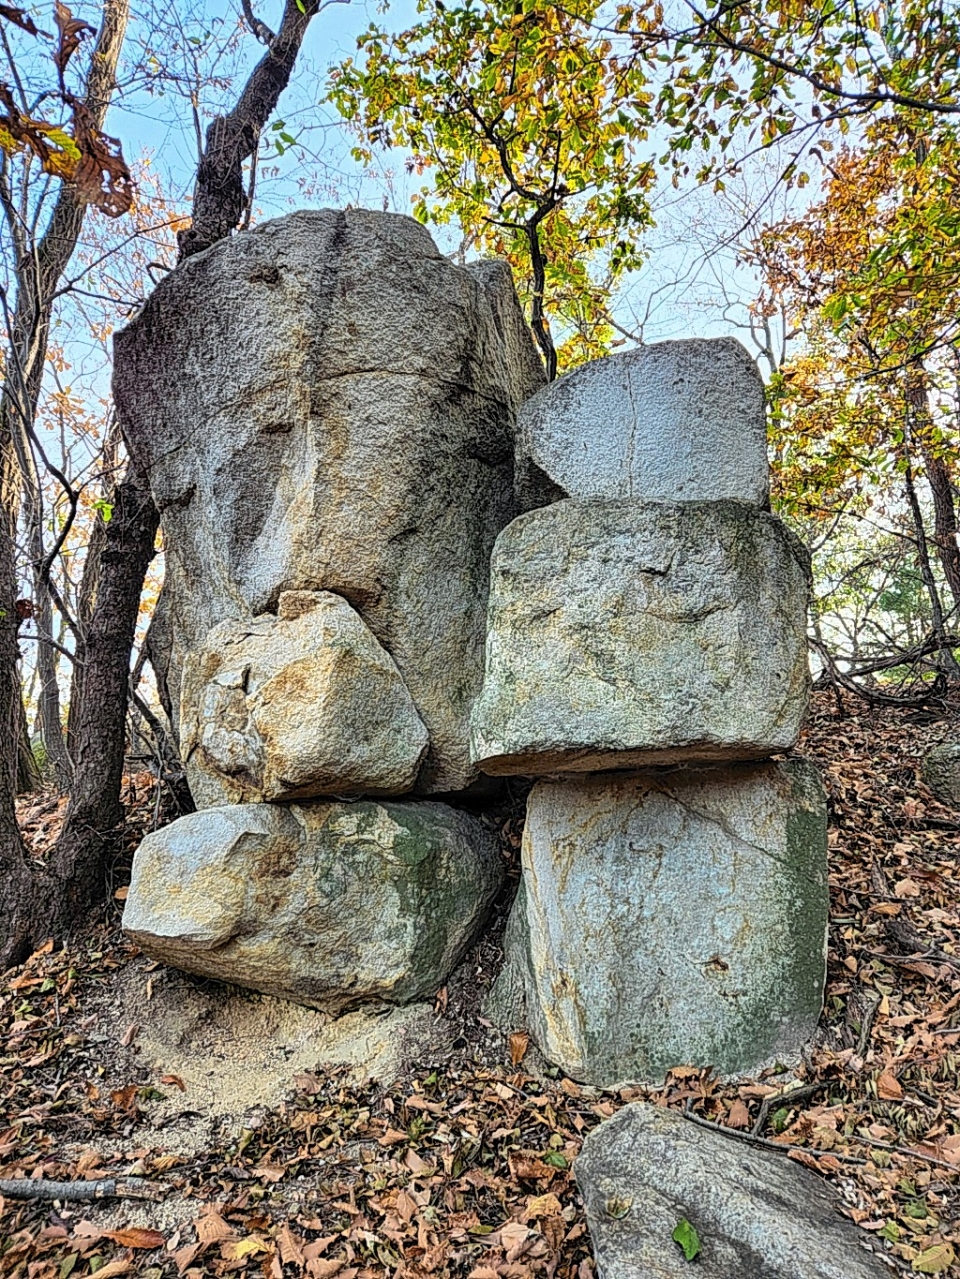 정아정도령바위.왼쪽 큰바위가 정도령 바위이고, 작은바위가 정아바위이다.